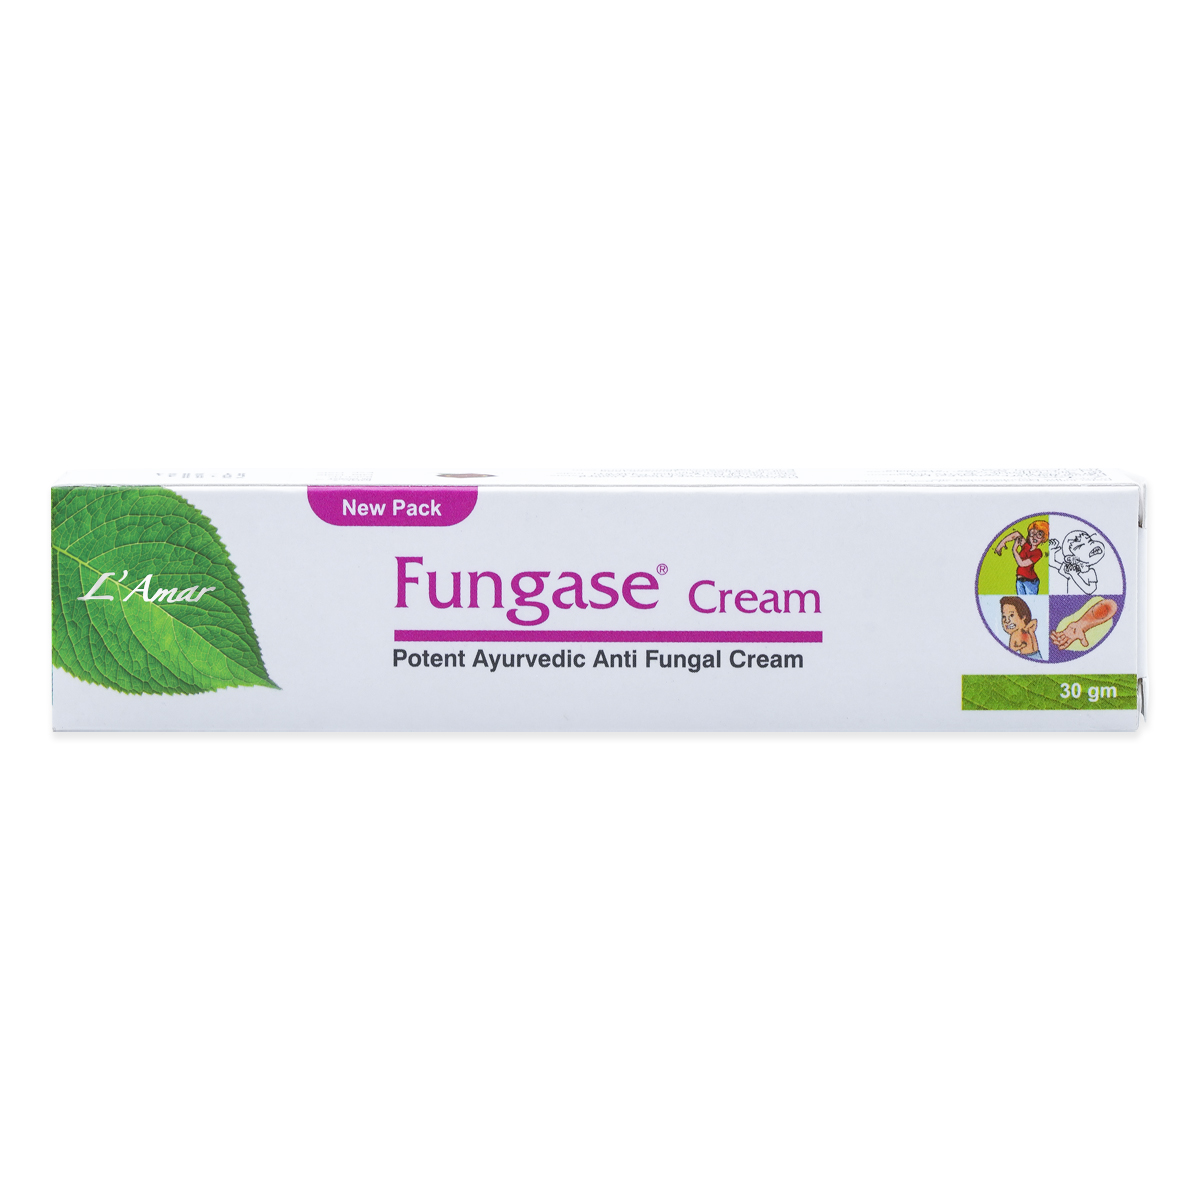 Get FUNGASE CREAM 30GM - best antifungal cream